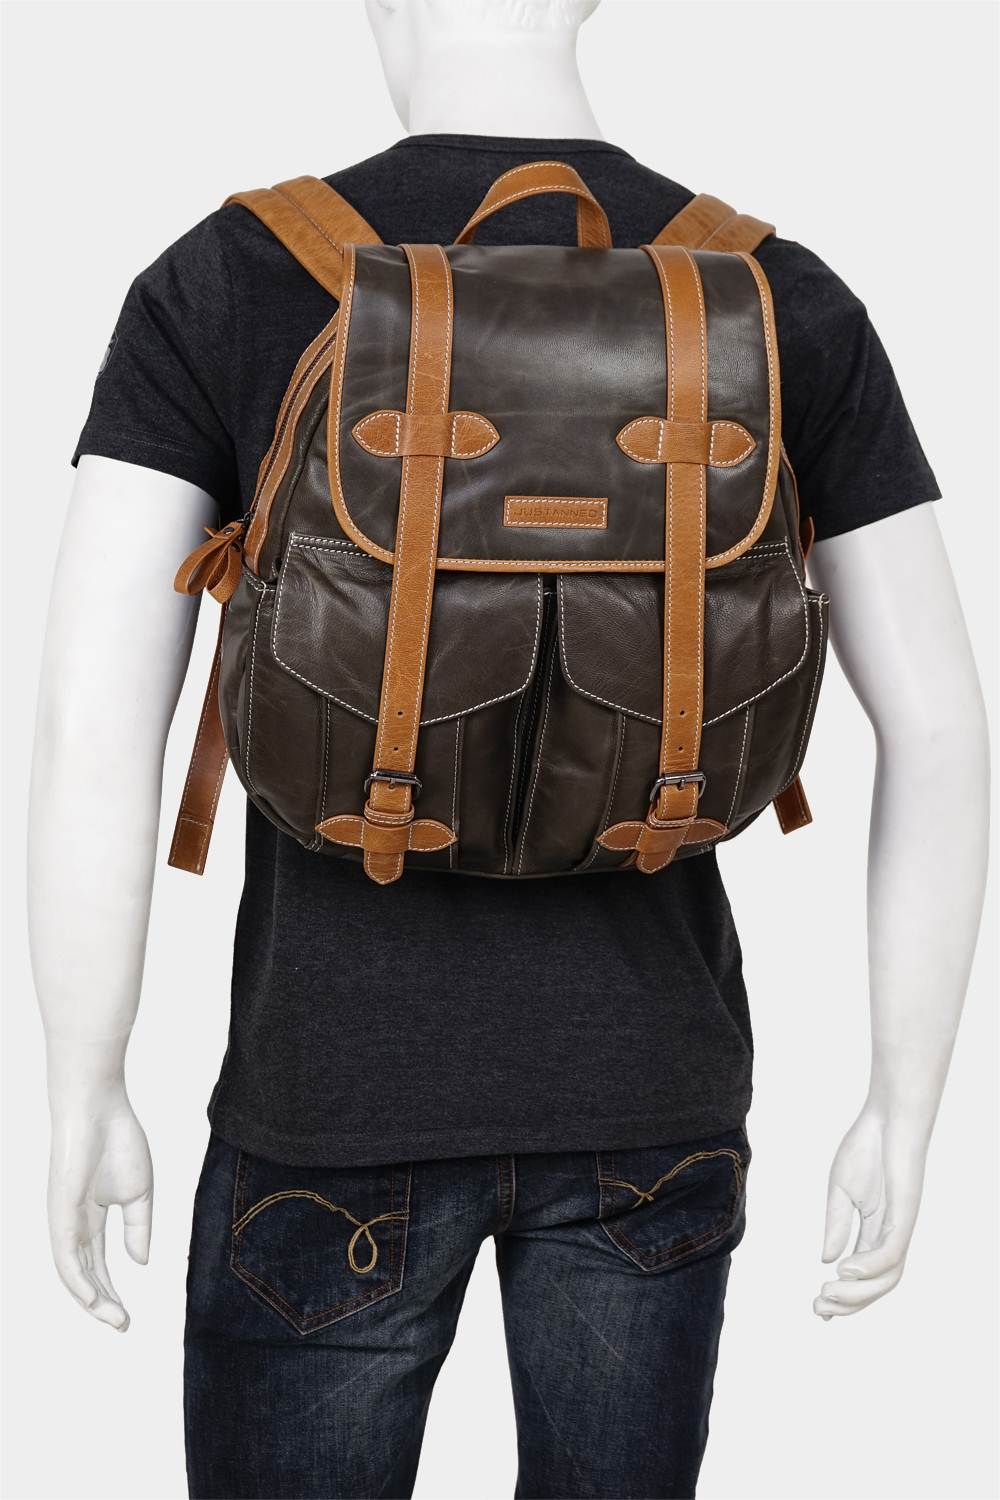 Justanned Mens Vintage Leather Backpack